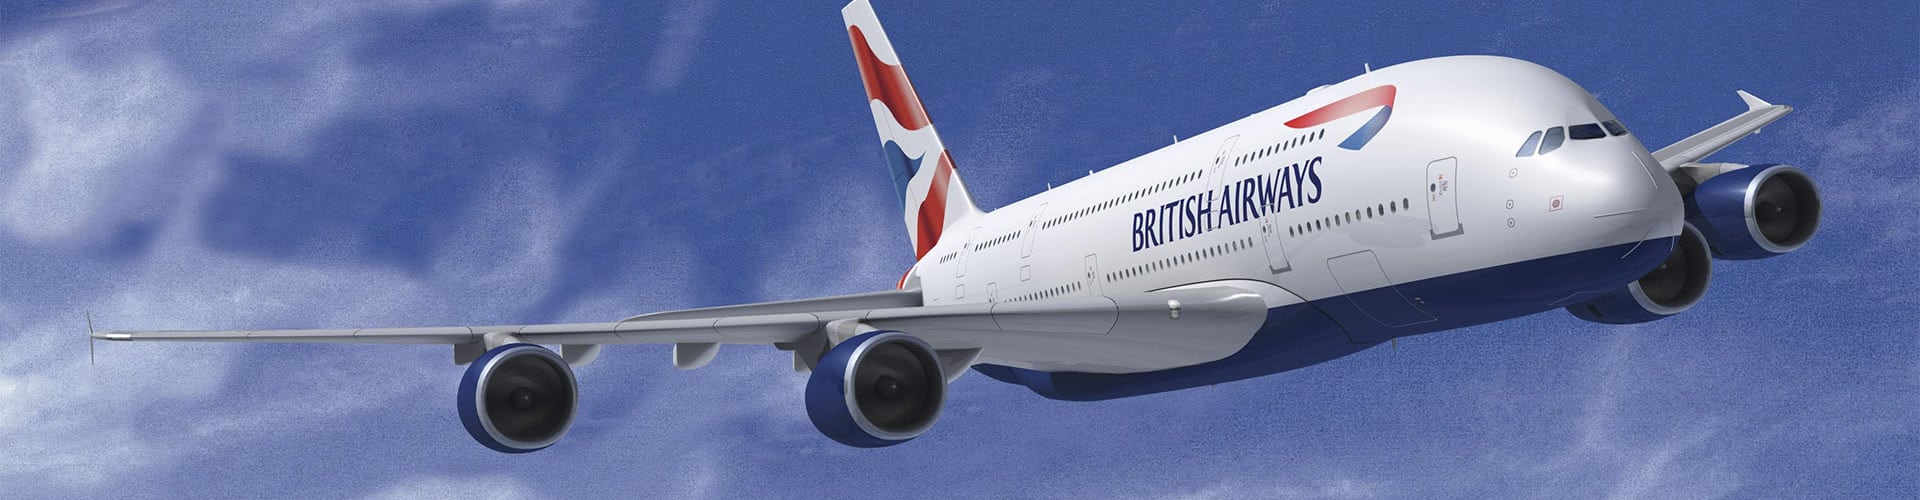 British Airways 英国航空画像3